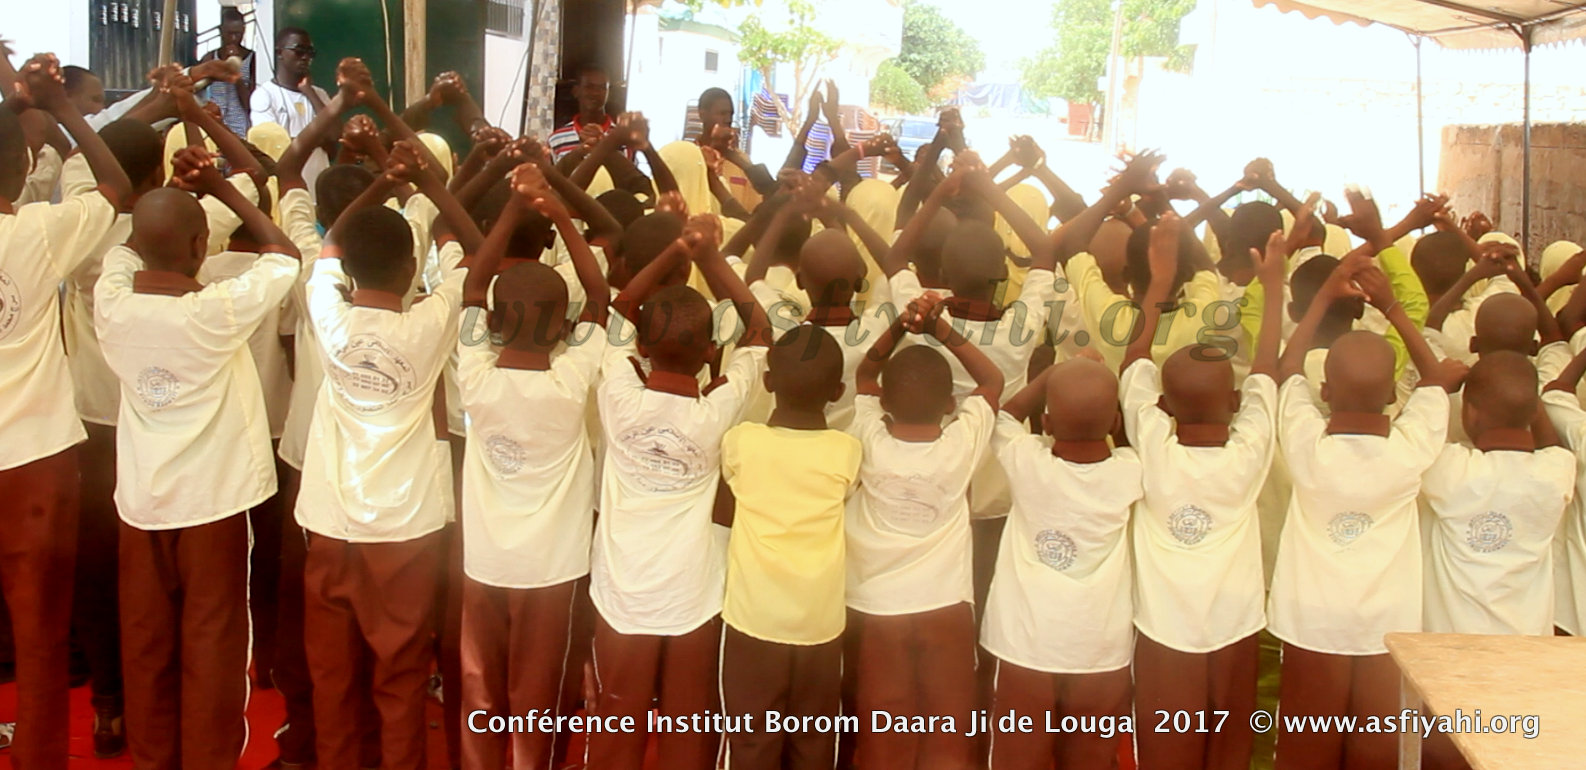 PHOTOS - LOUGA - Les Images de la Conférence de l'Institut Borom Daara Ji, de Serigne Ahmed Sarr